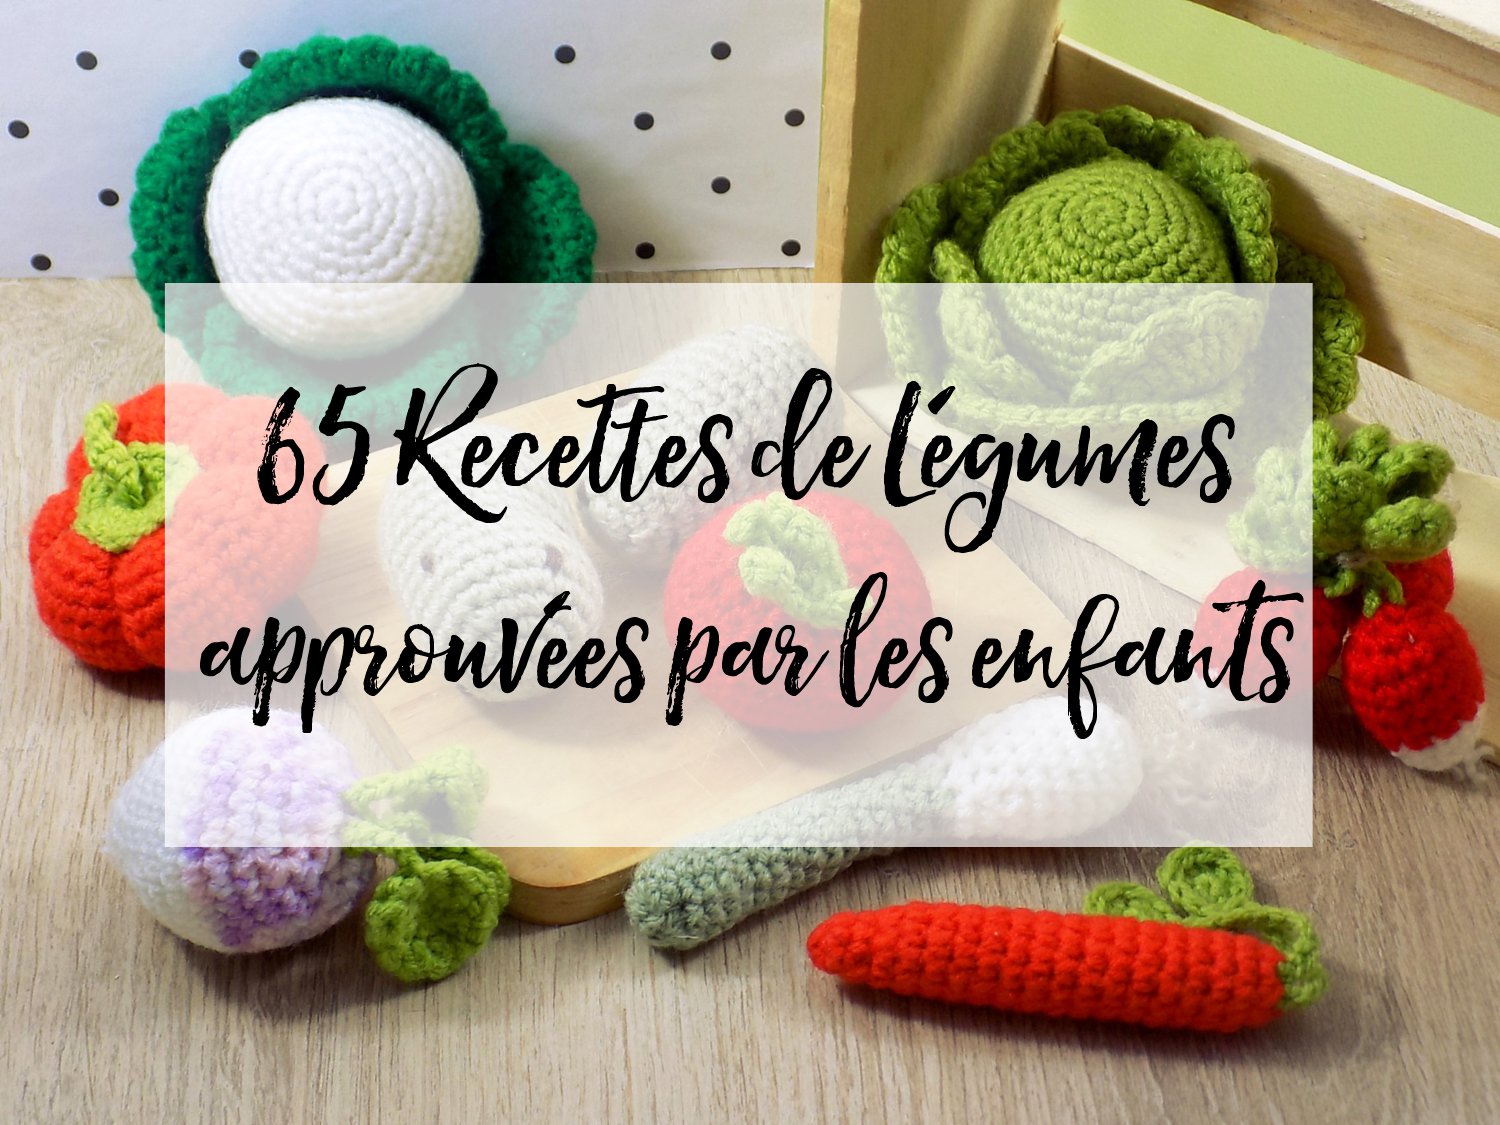 65 Recettes De Legumes Approuvees Par Les Enfants Chocolate Zucchini